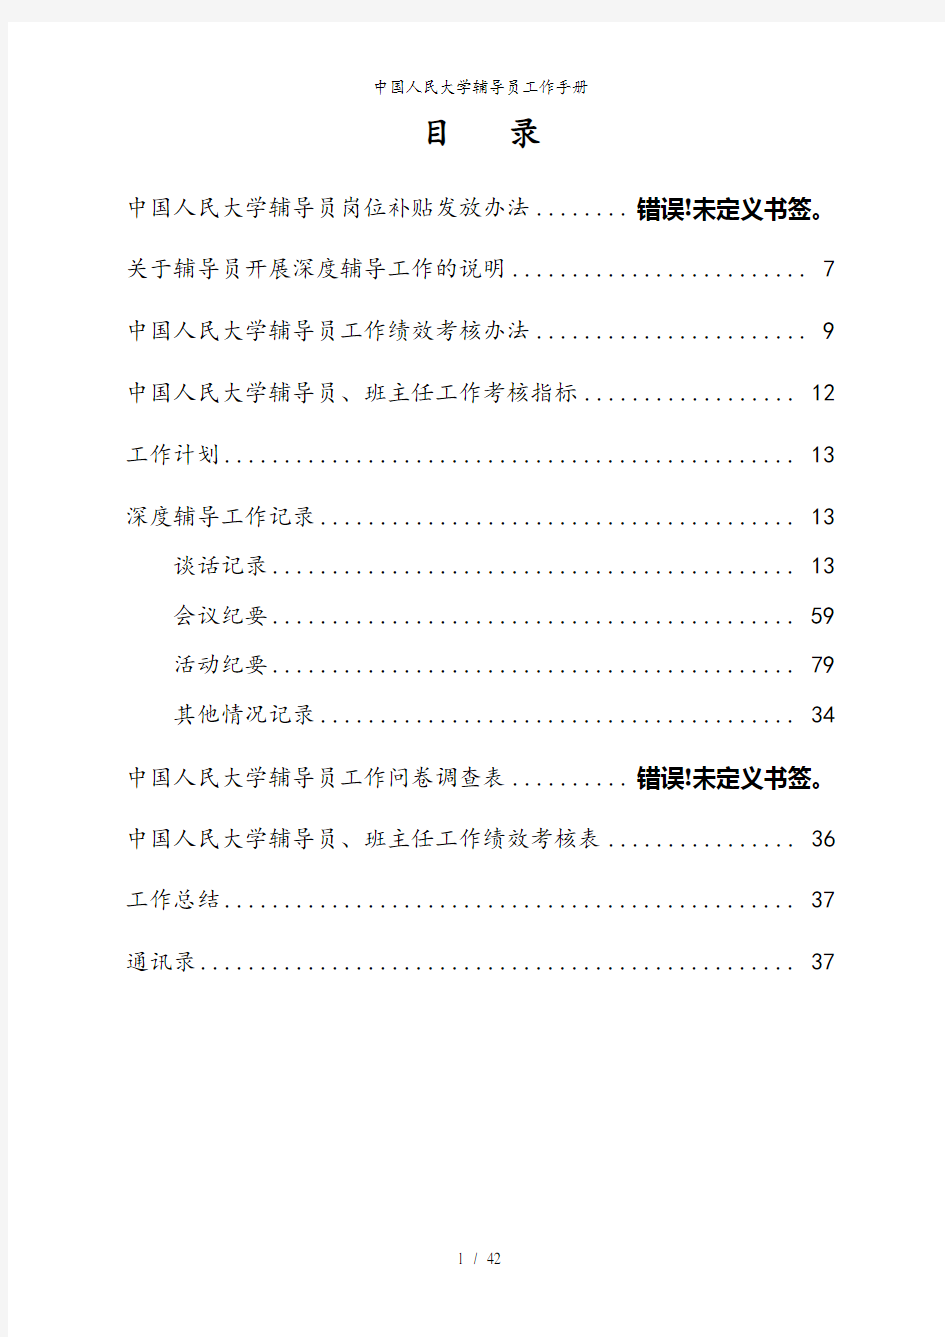 中国人民大学辅导员工作手册